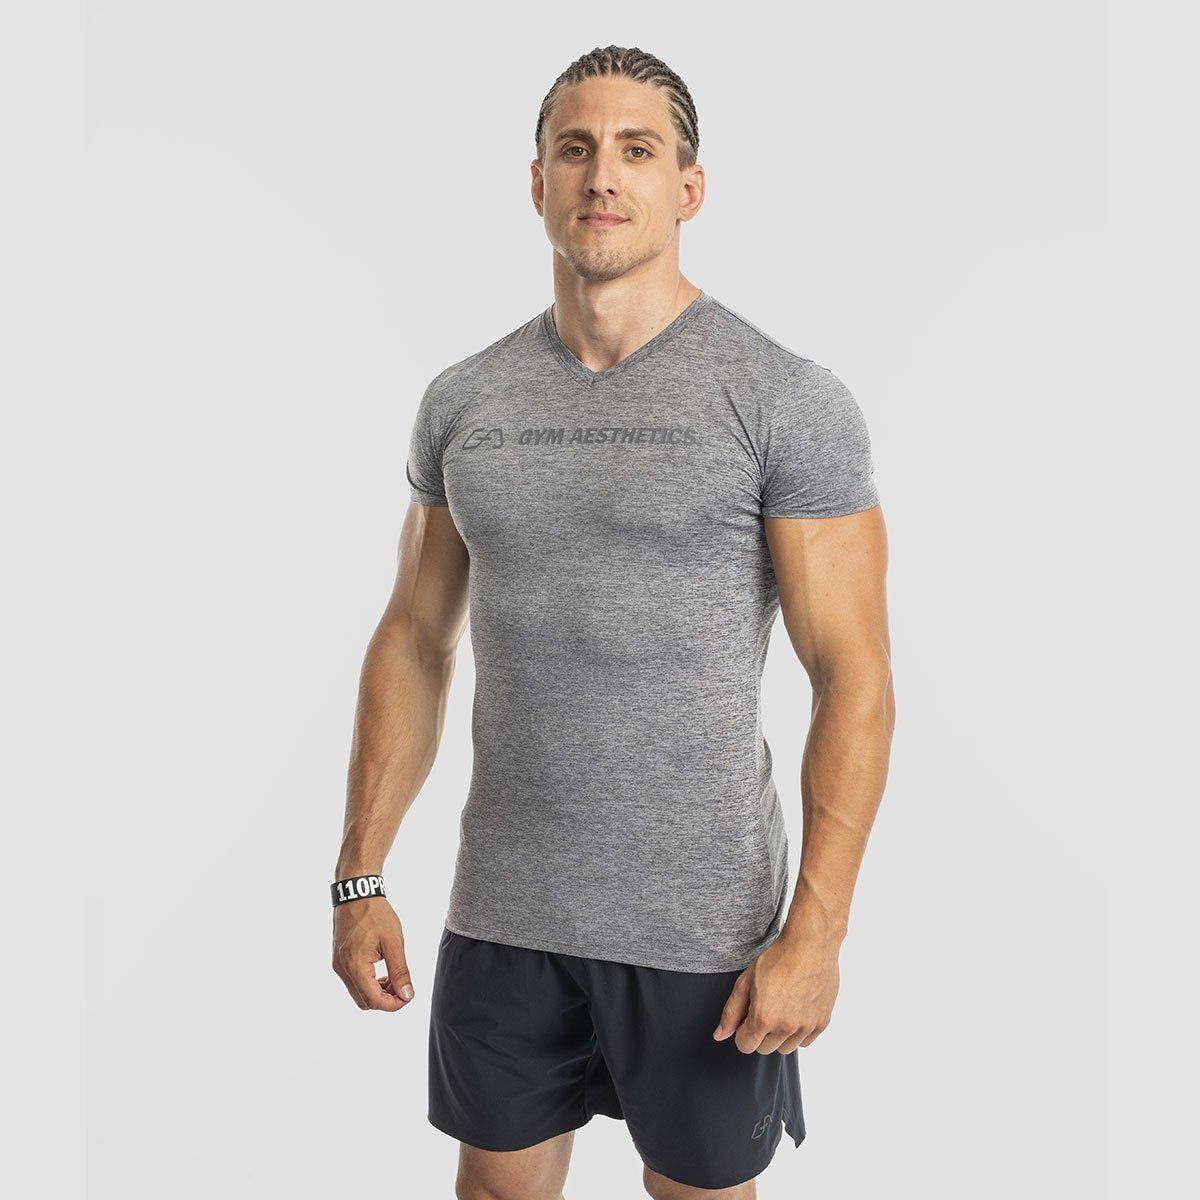 GYM AESTHETICS Funktionsshirt V-Neck Tight-Fit T-Shirt Intensity für Herren V-Ausschnitt, UV-Schutz, Stretch, Atmungaktiv Melange Holzkohle